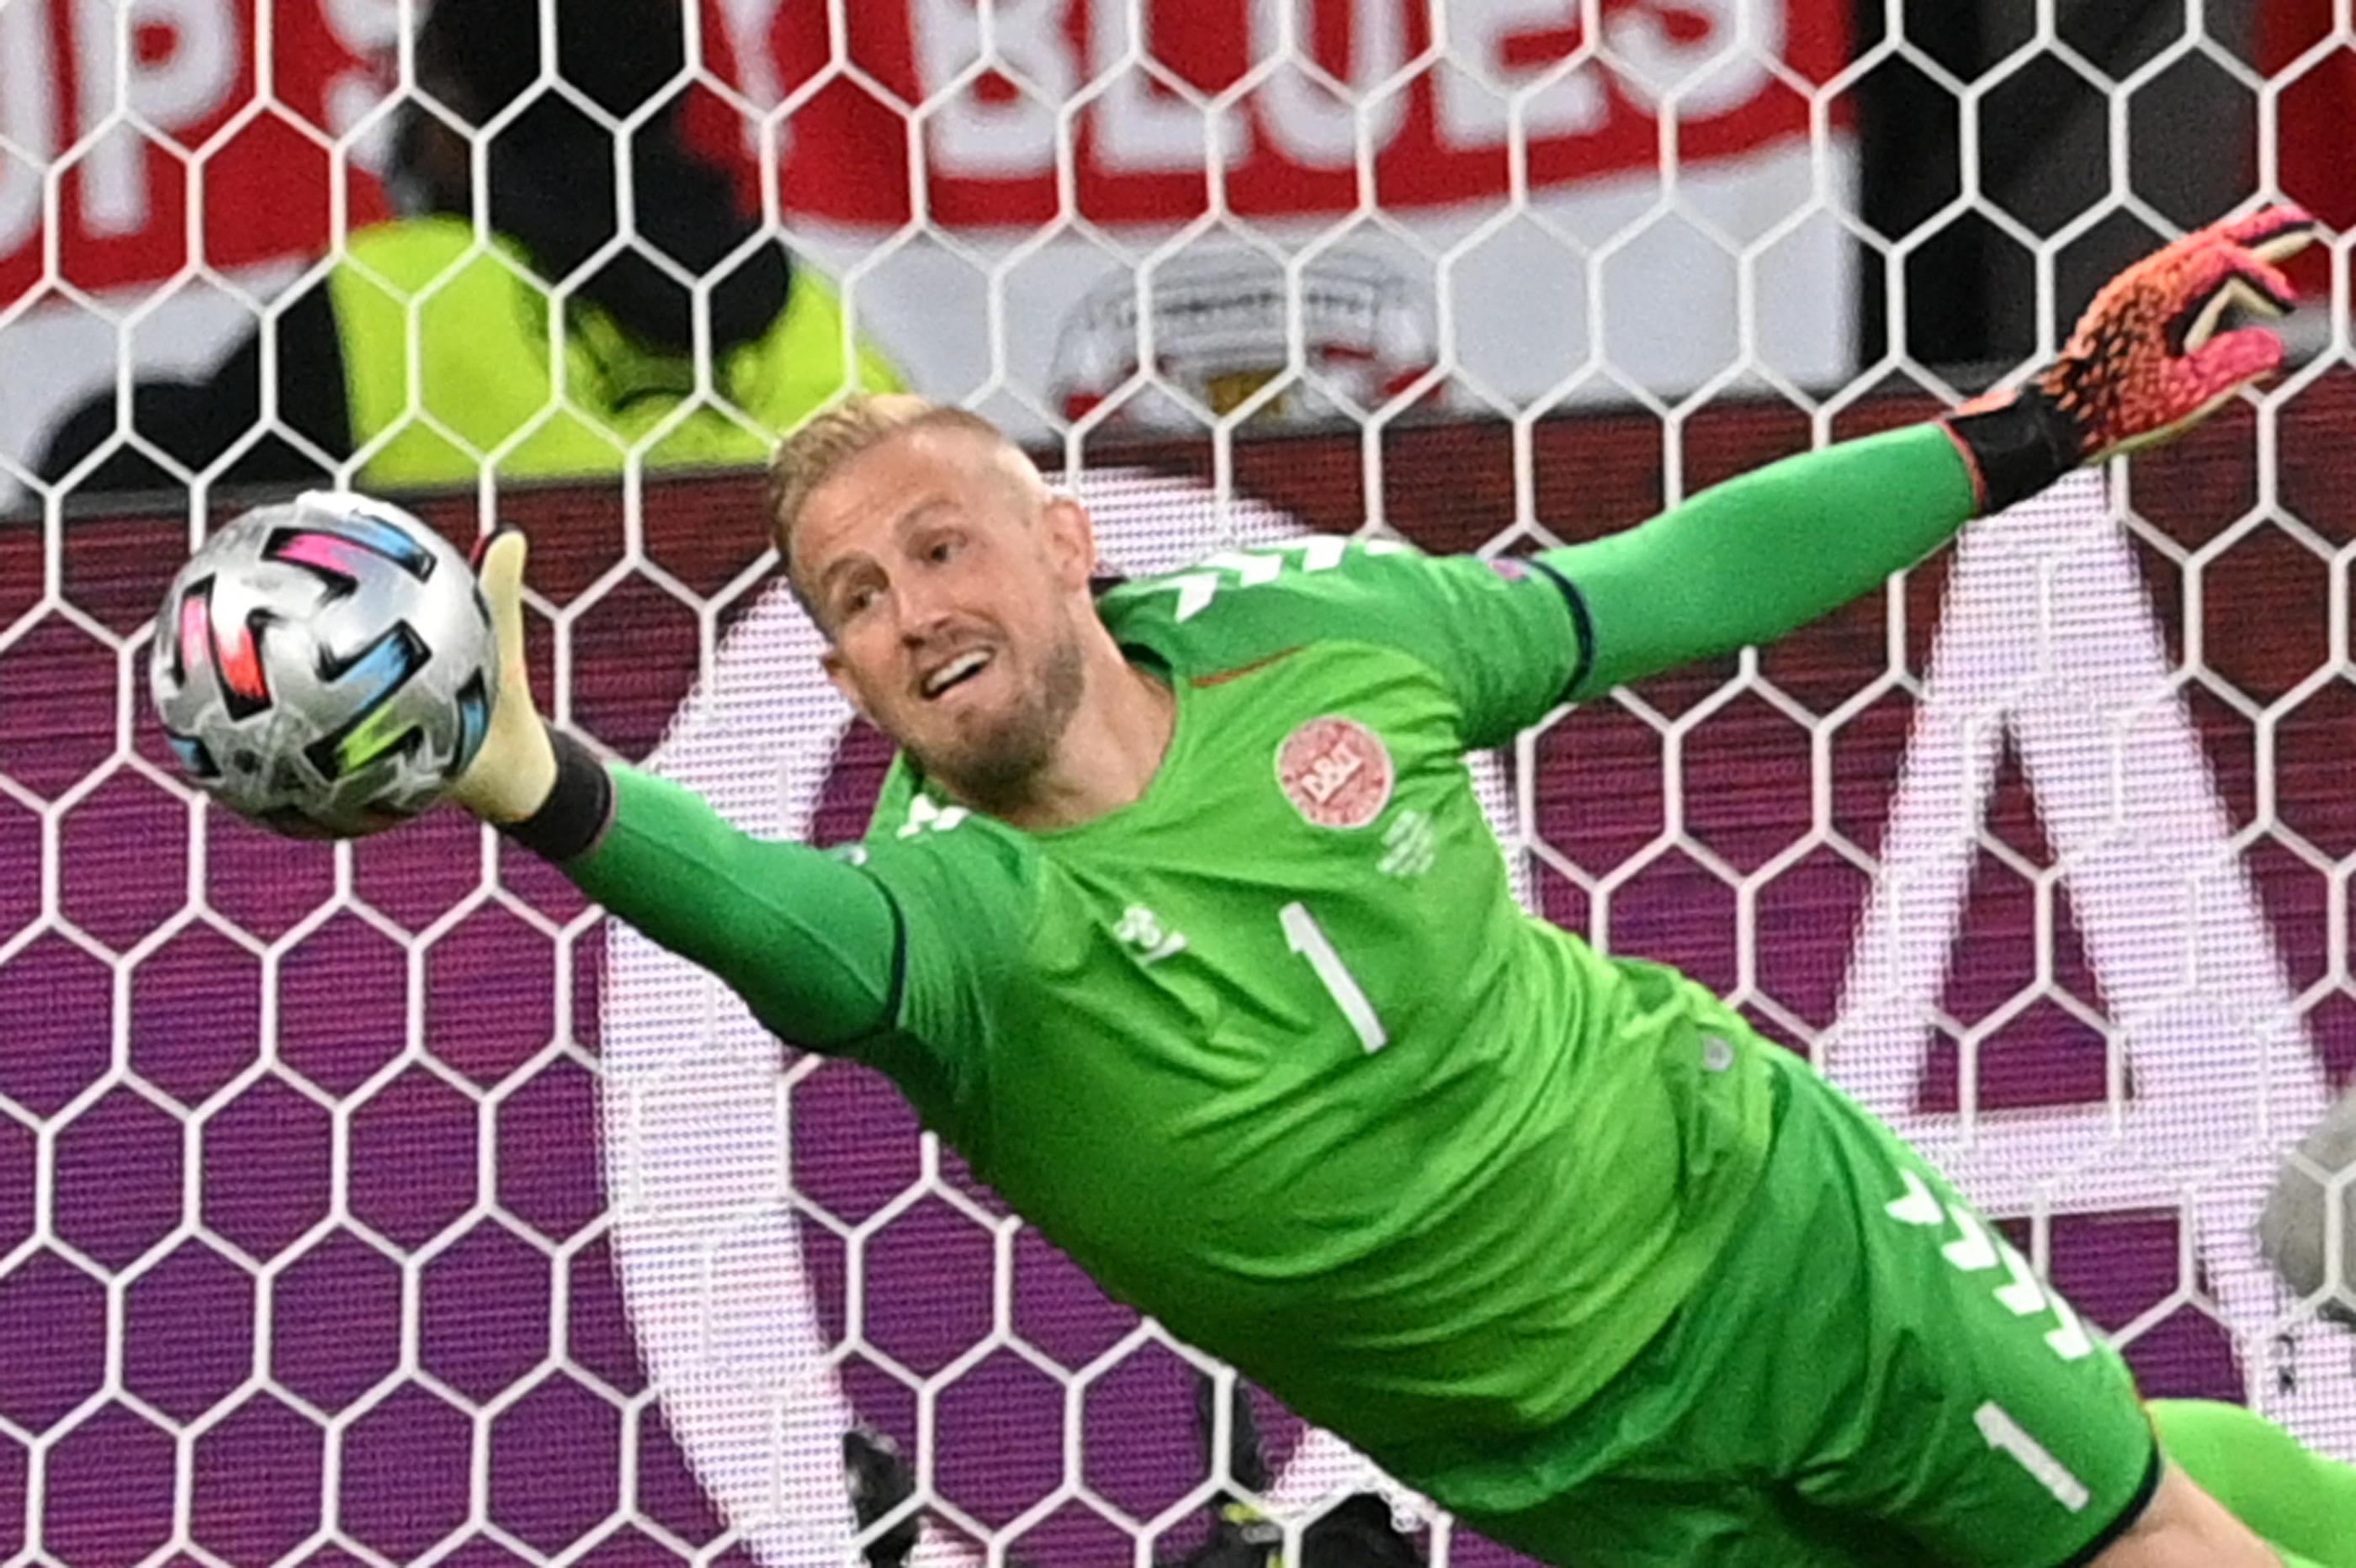 Des supporters anglais présents dans les tribunes de Wembley ont tenté de déstabiliser Kasper Schmeichel, le gardien danois, en le visant avec des lasers. L'UEFA a ouvert une enquête (Photo by JUSTIN TALLIS / POOL / AFP)